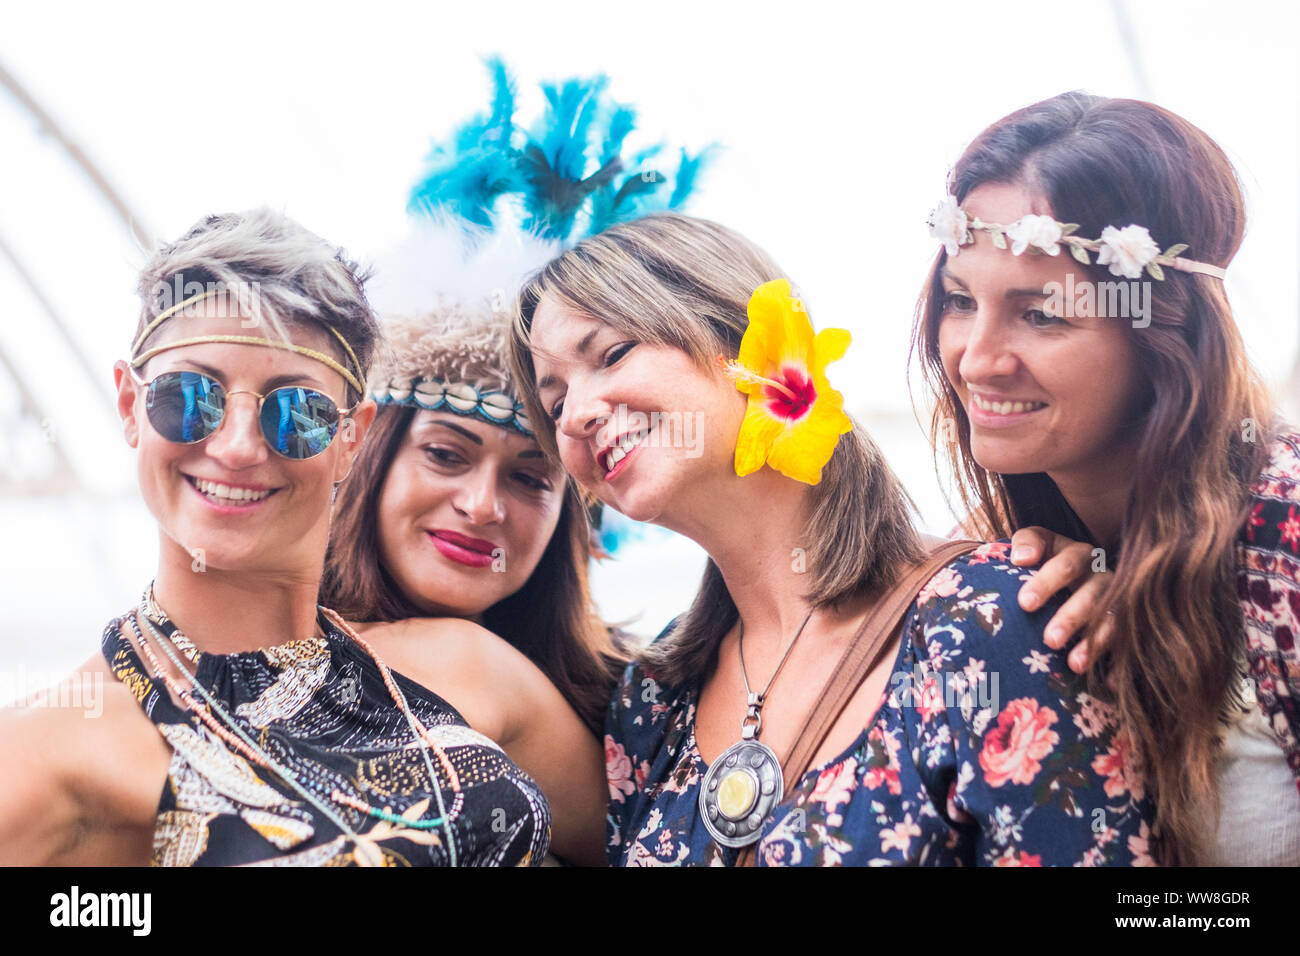 Quattro allegro belle giovani donne festeggiare insieme e prendere una immagine selfie sorridente e divertirsi in amicizia, parte il concetto con abiti colorati e fiori folla, sfondo luminoso, felici le persone Foto Stock